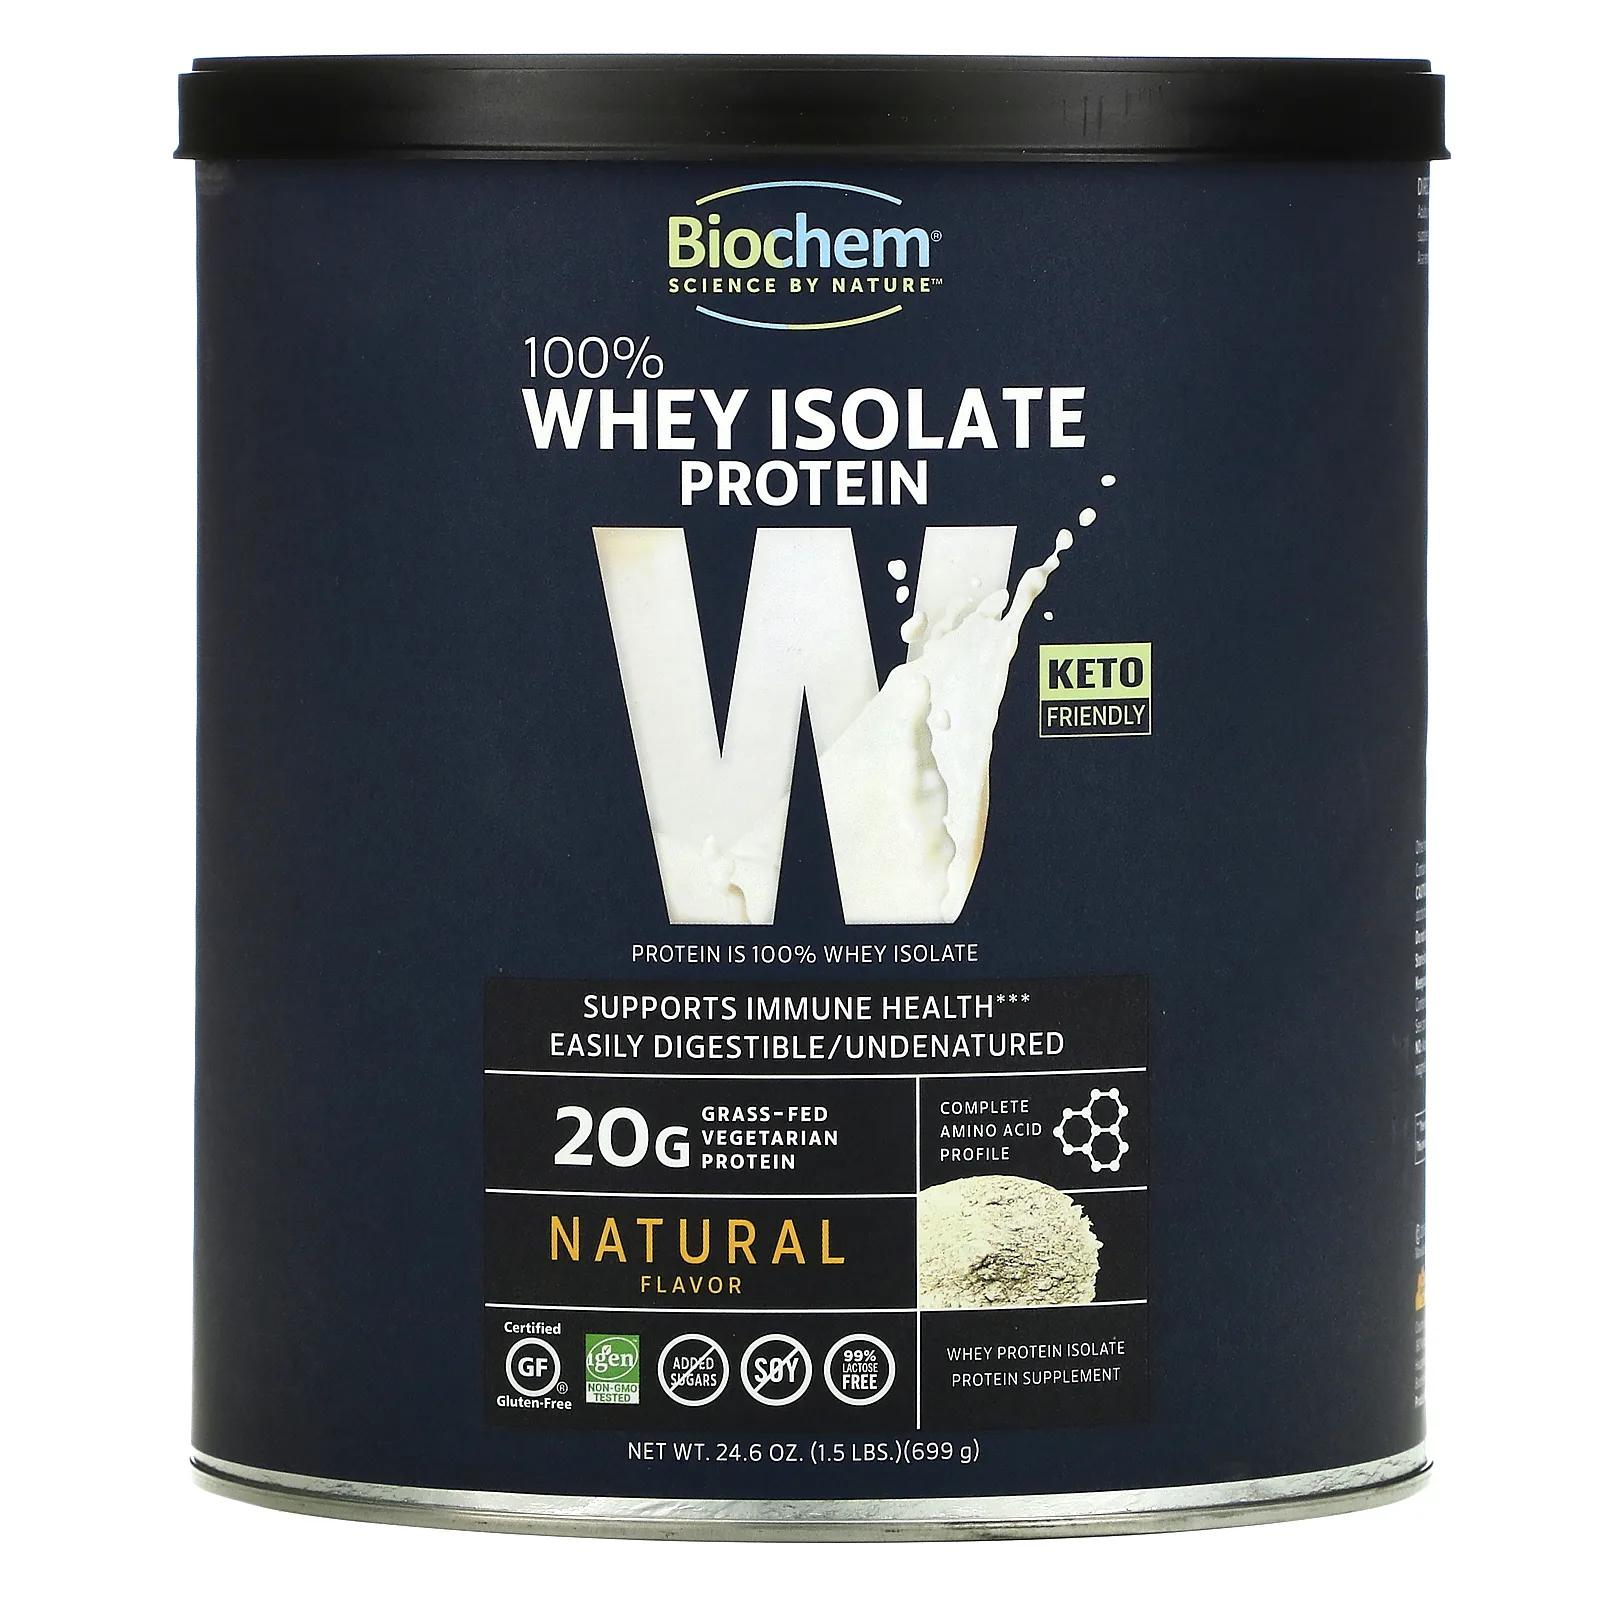 Biochem 100% Whey Isolate Protein Natural Flavor 24.6 oz (699 g) biochem 100% whey isolate protein sugar free chocolate flavor 12 5 oz 355 g